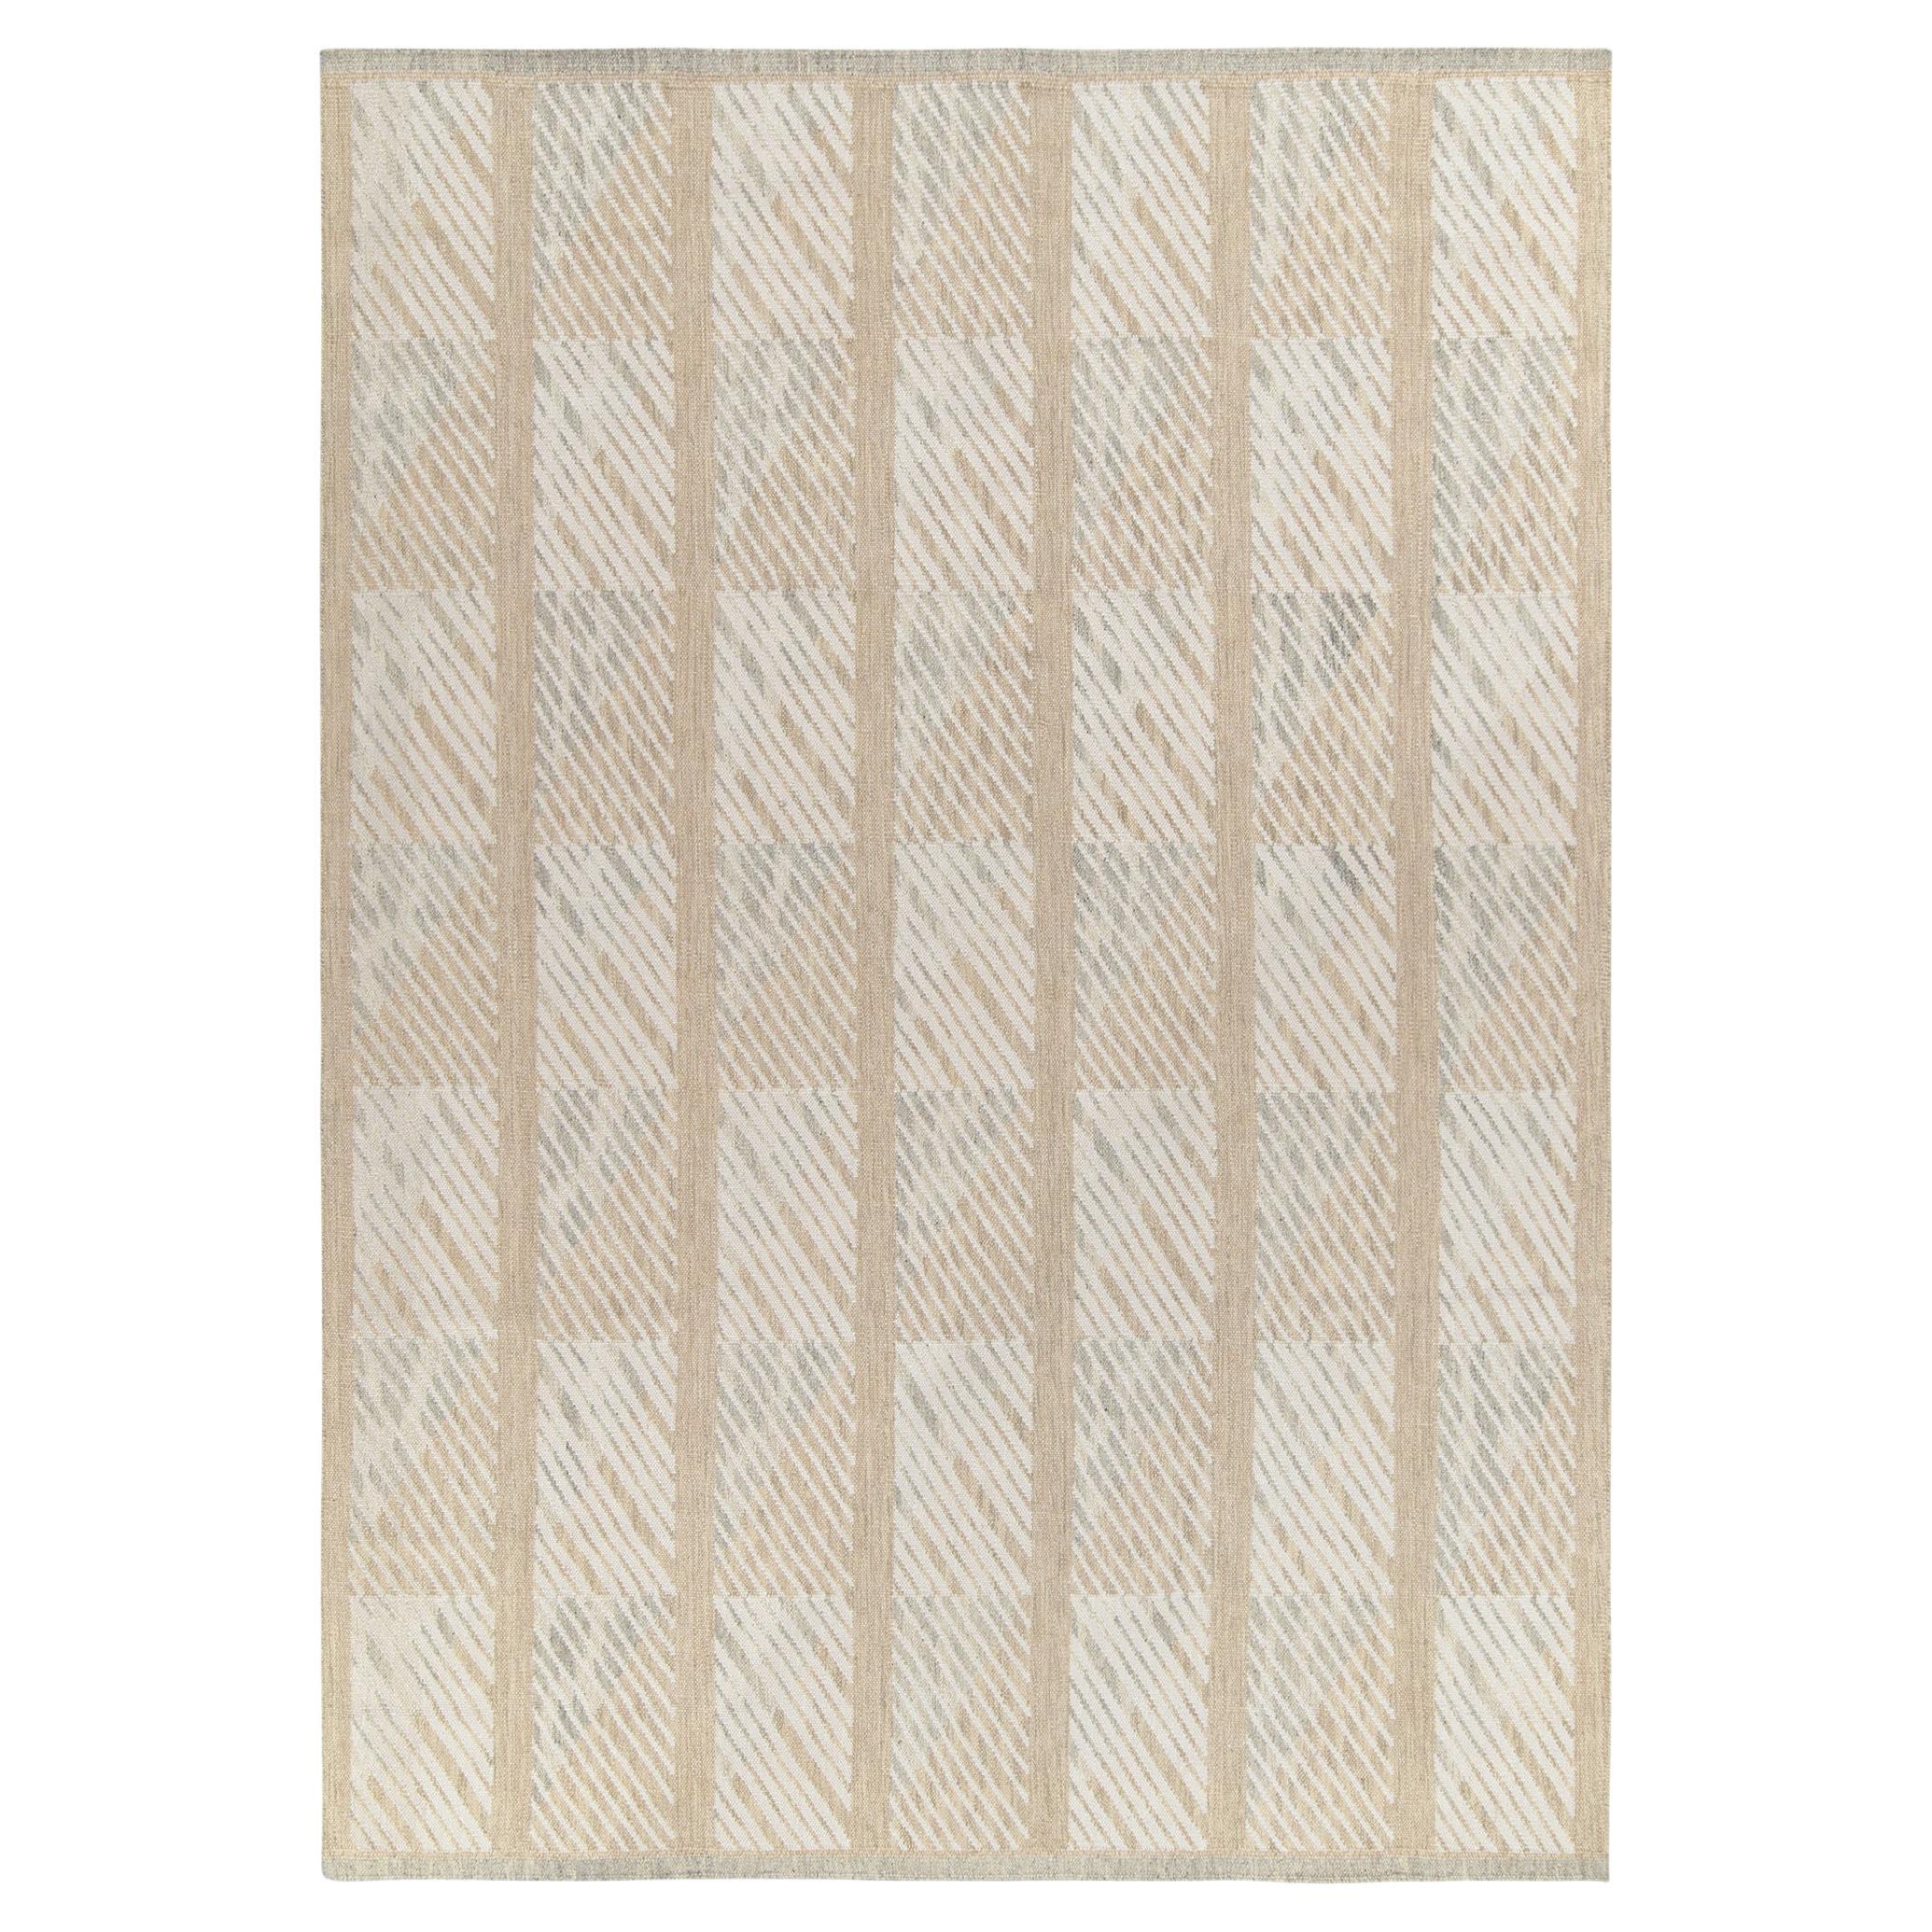 Rug & Kilim's Scandinavian Style Kilim Rug in White Beige Geometric Pattern (tapis de style scandinave à motif géométrique blanc et beige)